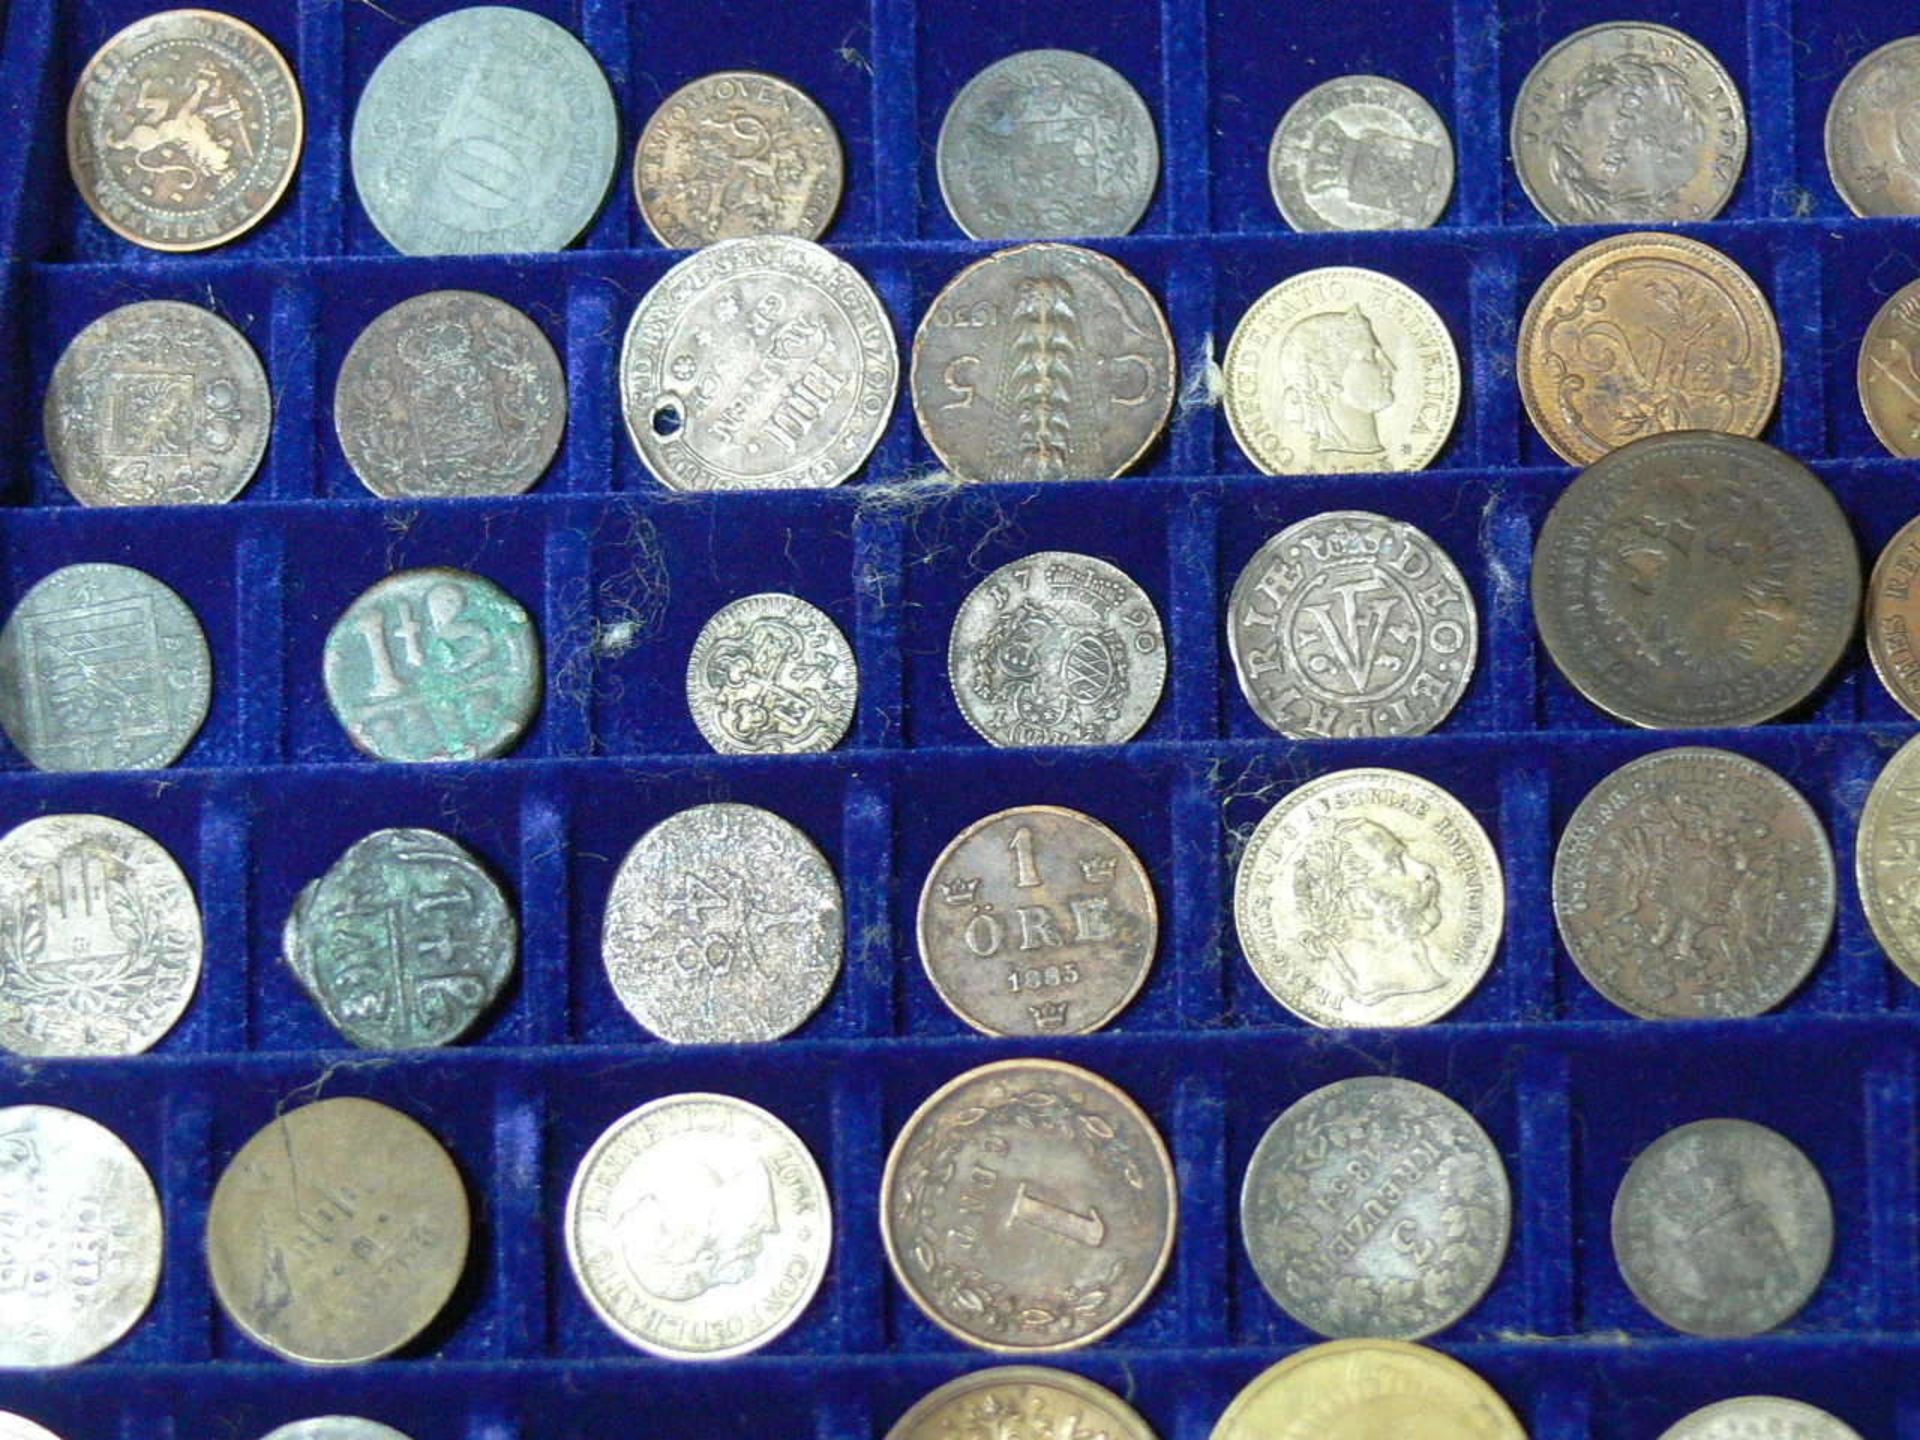 Großes Lot alte Münzen aus aller Welt aus dem 17. bis 19. Jahrhundert. Über 100 Stück. Darunter u. - Bild 2 aus 6